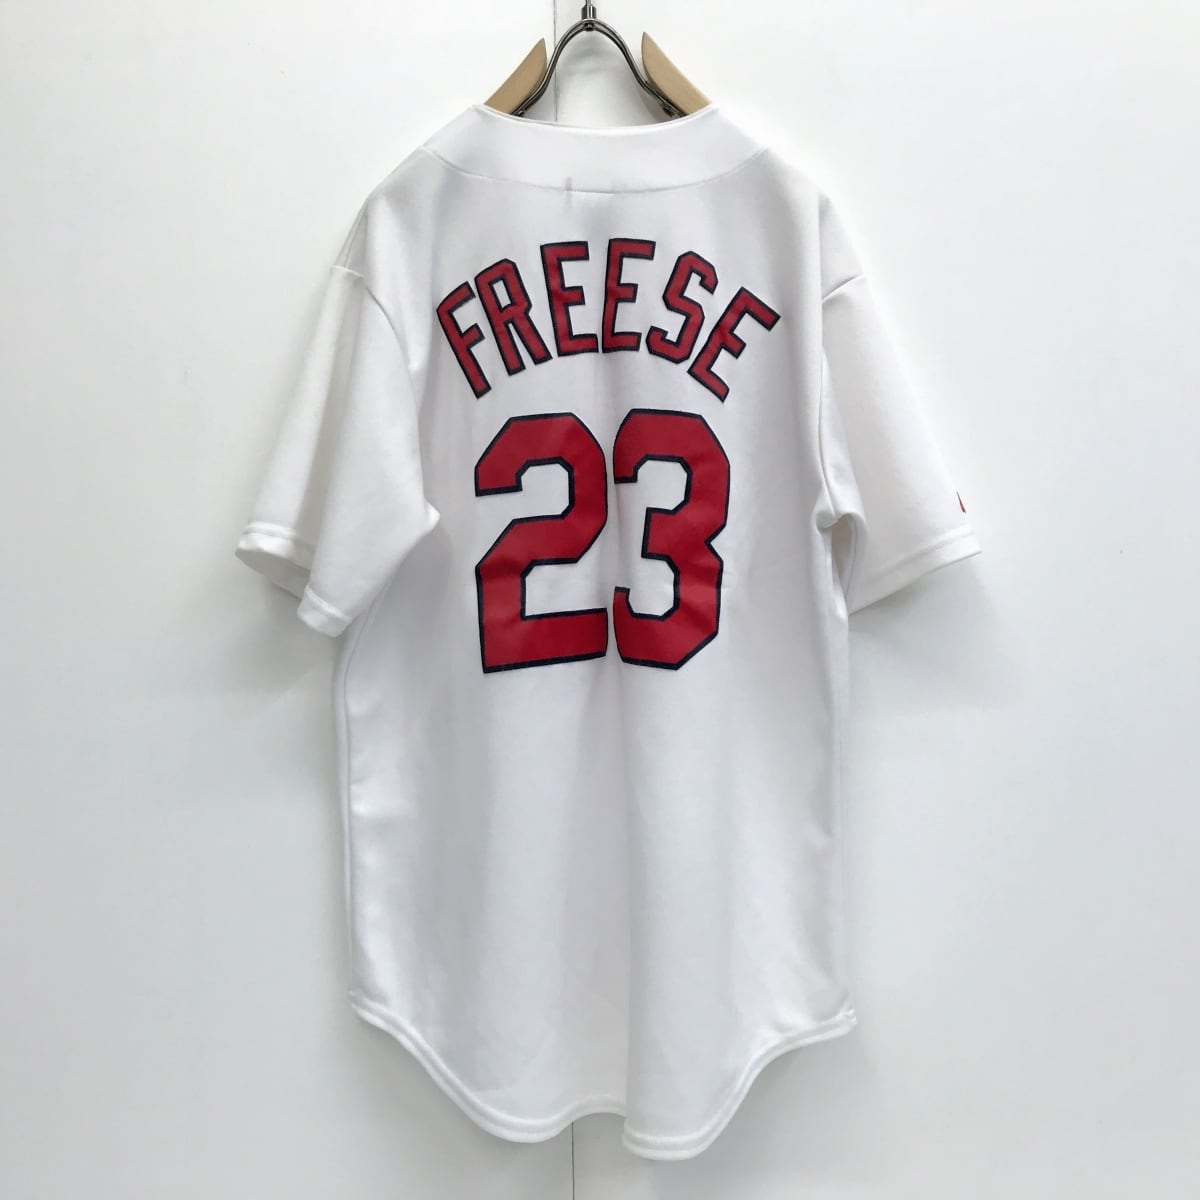 マジェスティック MLB セントルイス カージナルス DAVID FREESE #23 ベースボールシャツ ホワイト L 半袖 タグ